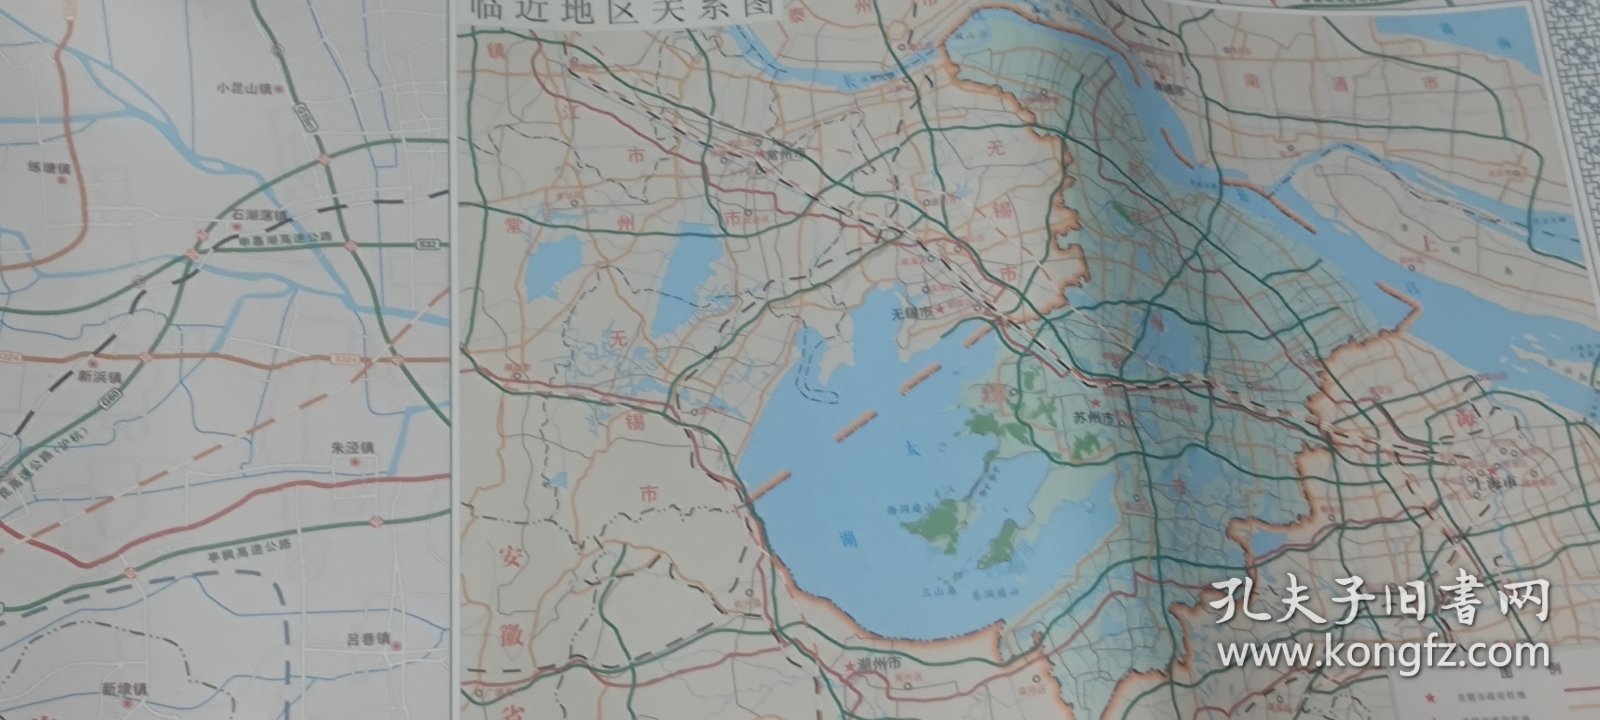 苏州市全图